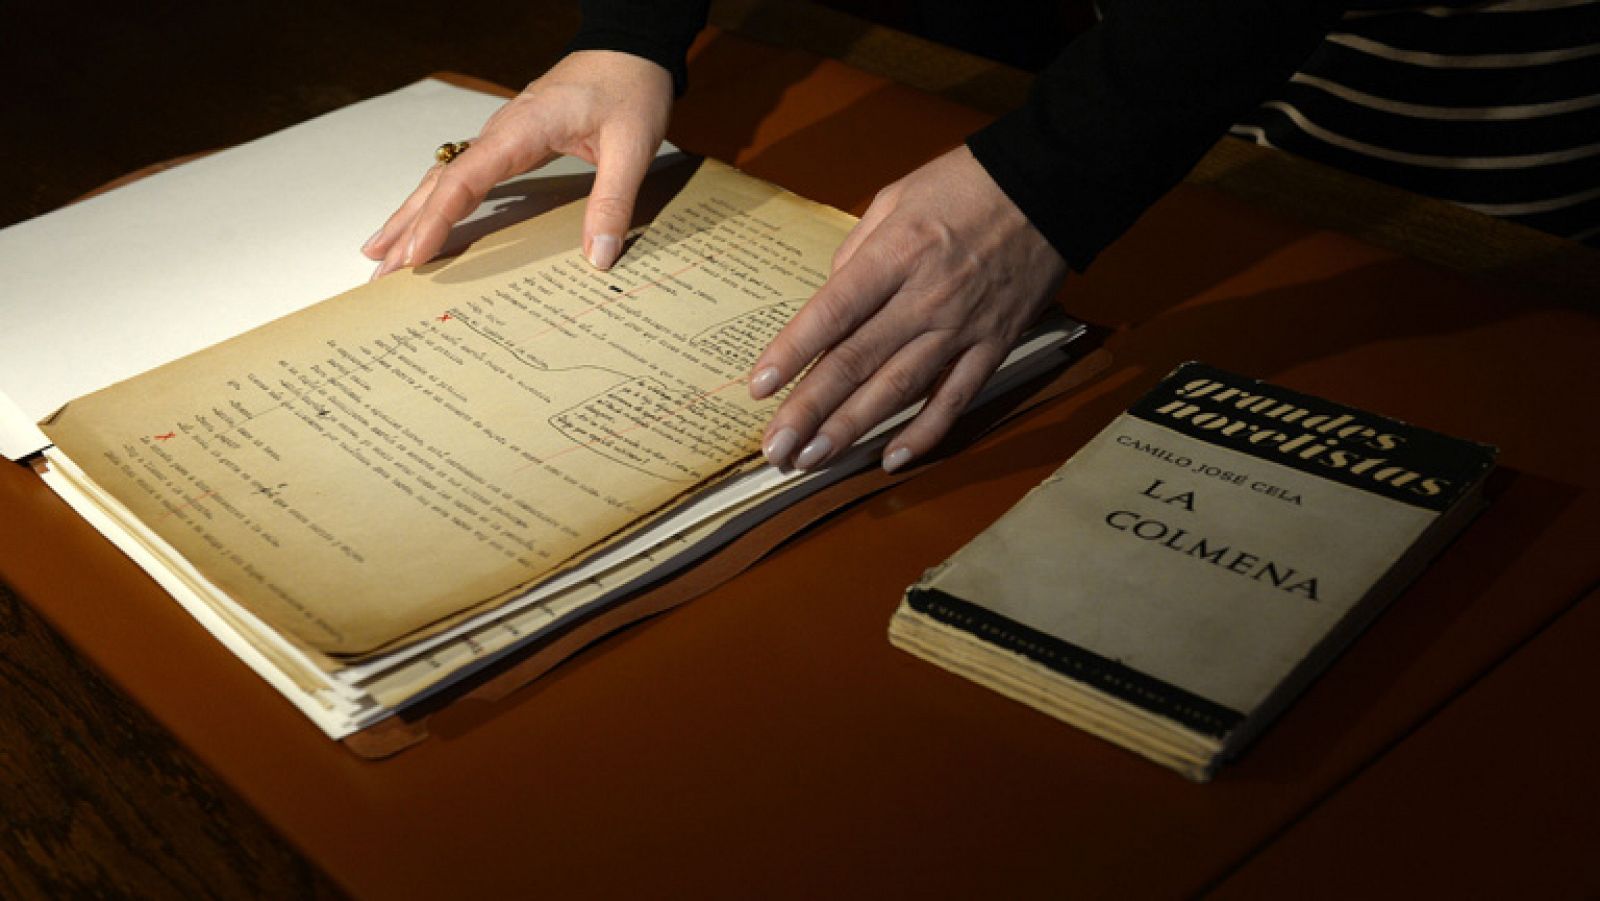 Presentan un manuscrito inédito de 'La colmena' de Cela que saca a la luz pasajes censurados